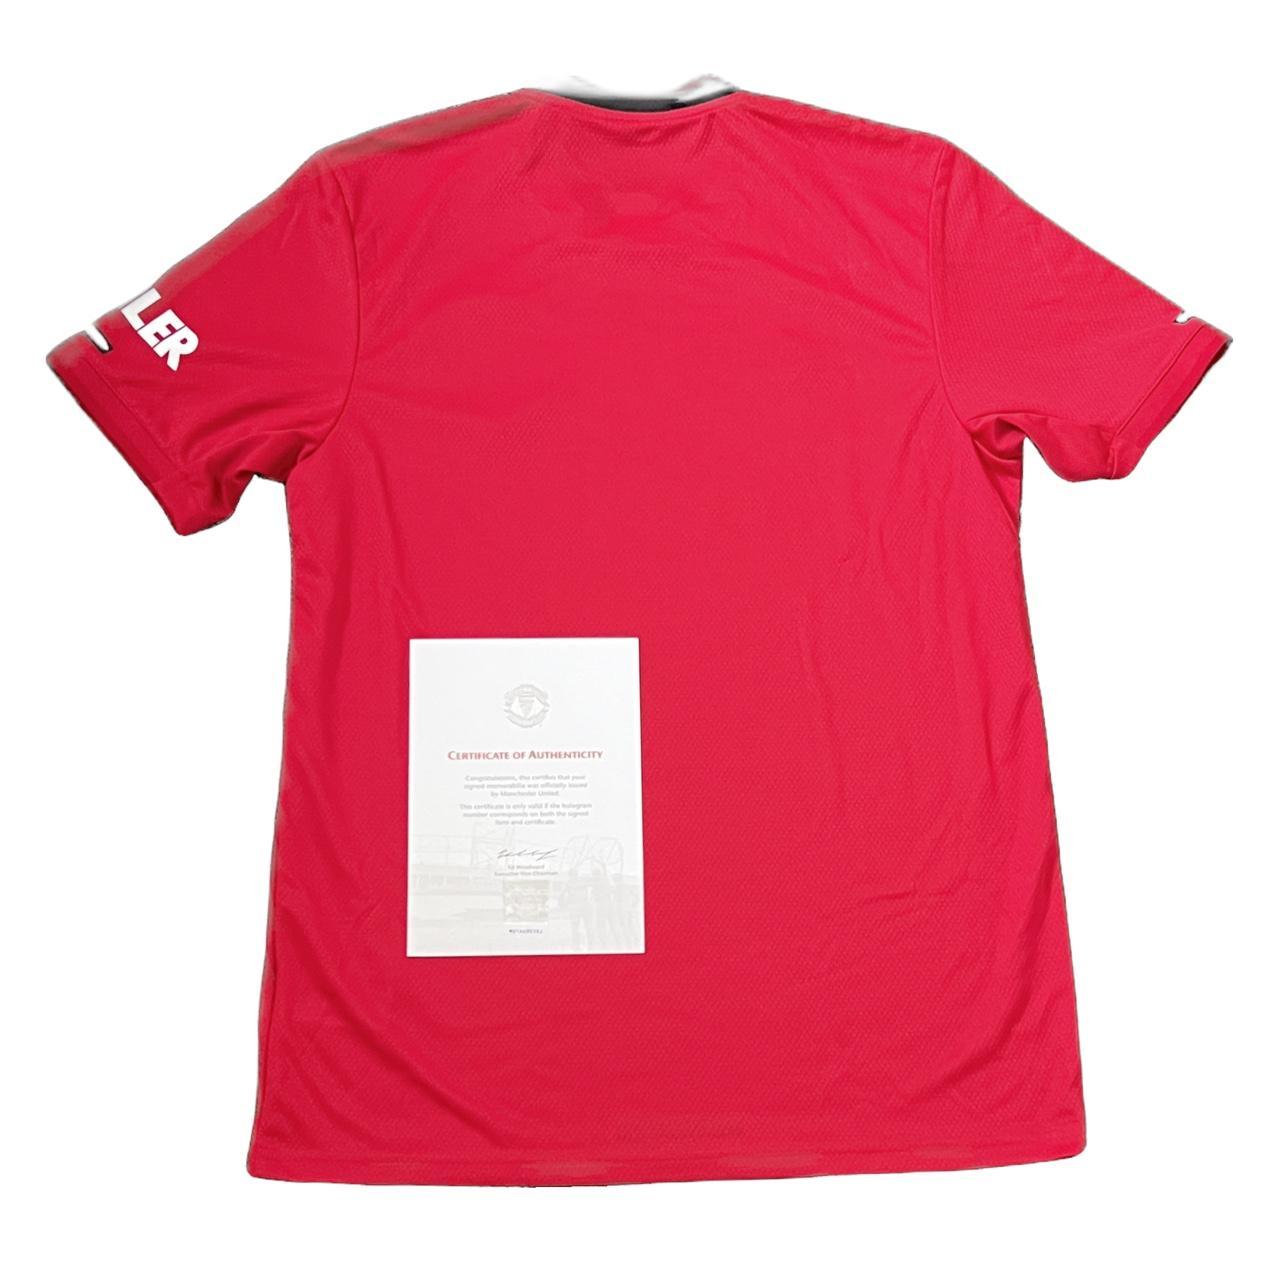 Adidas Men's Red Shirt | Depop